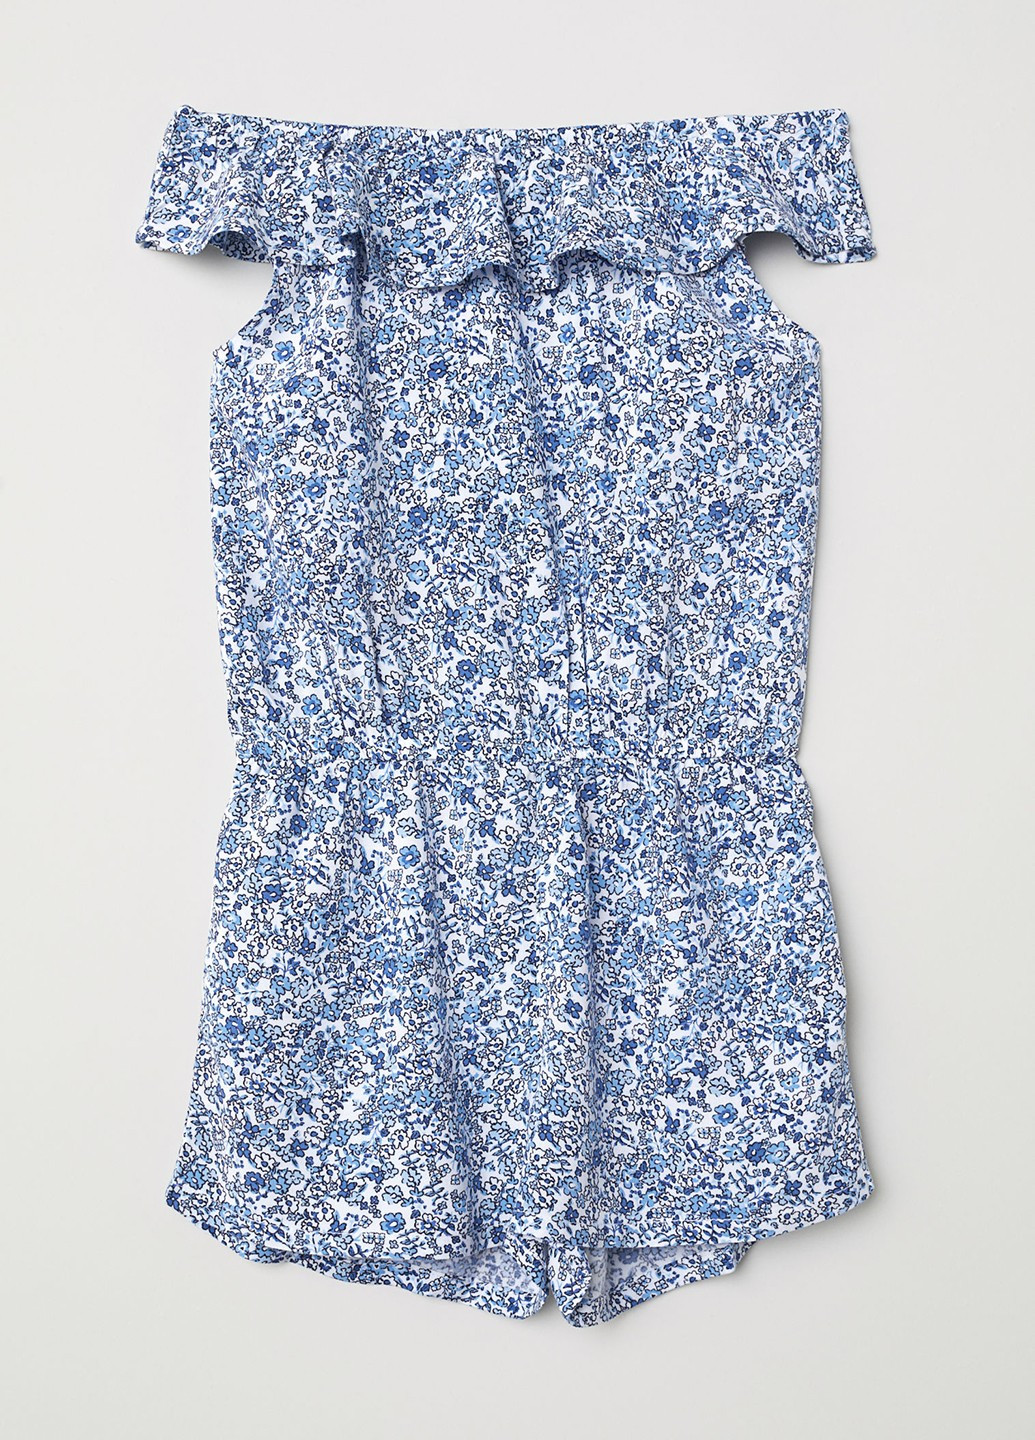 Комбинезон H&M комбинезон-шорты цветочный светло-синий кэжуал